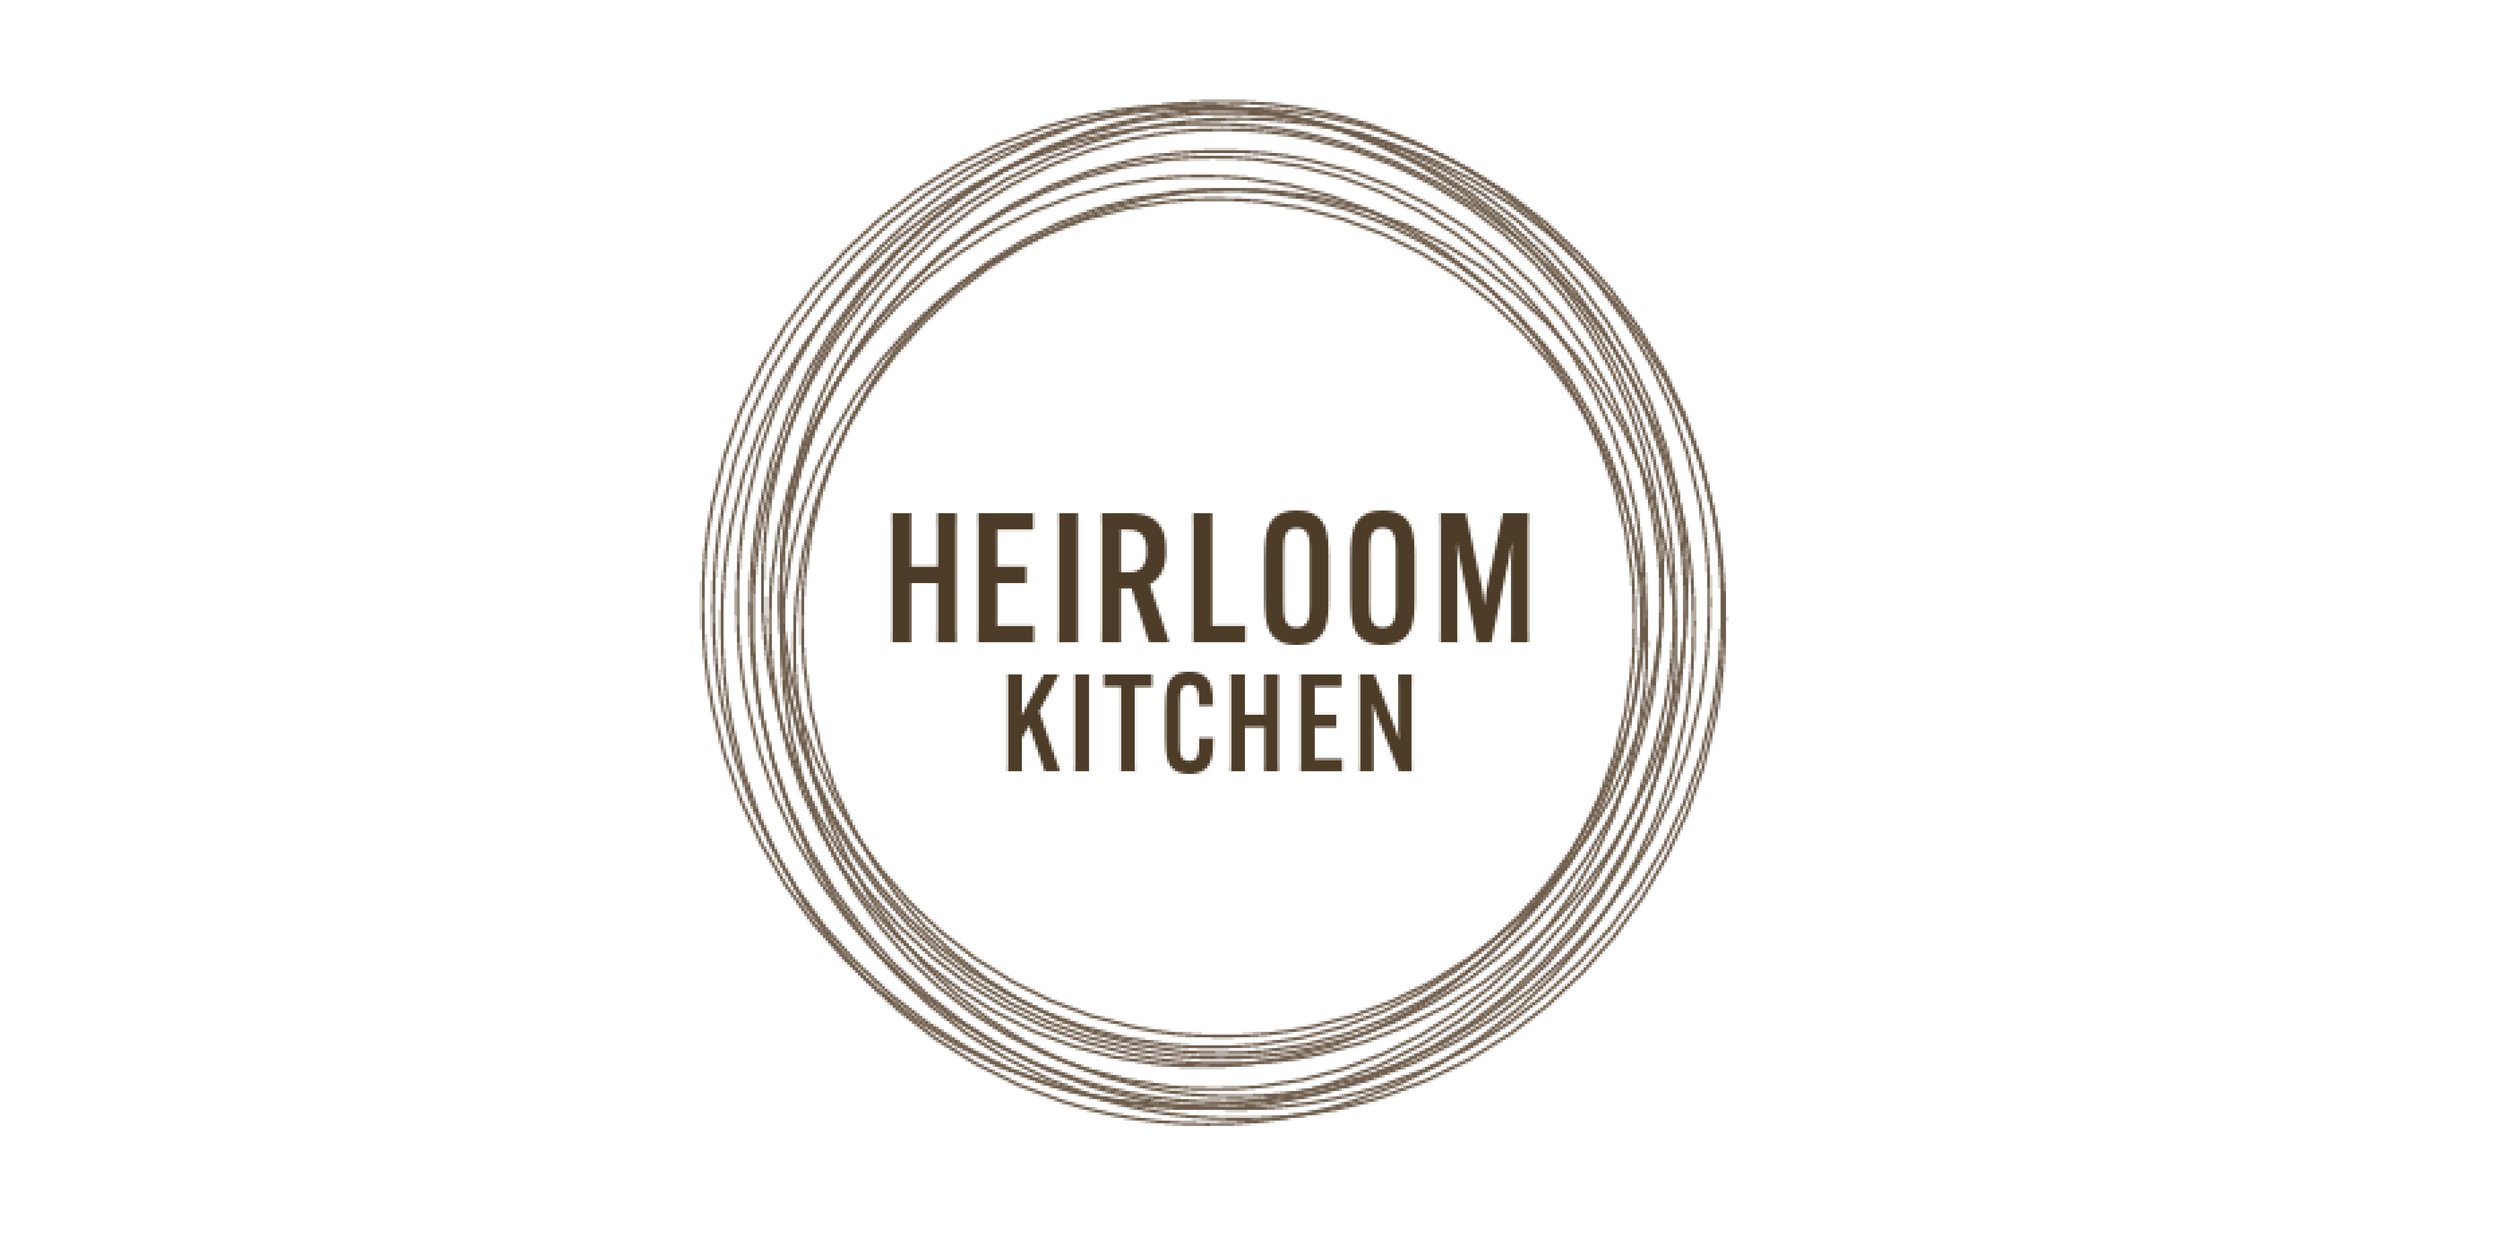 Heirloom Kitchen - web logo.jpg